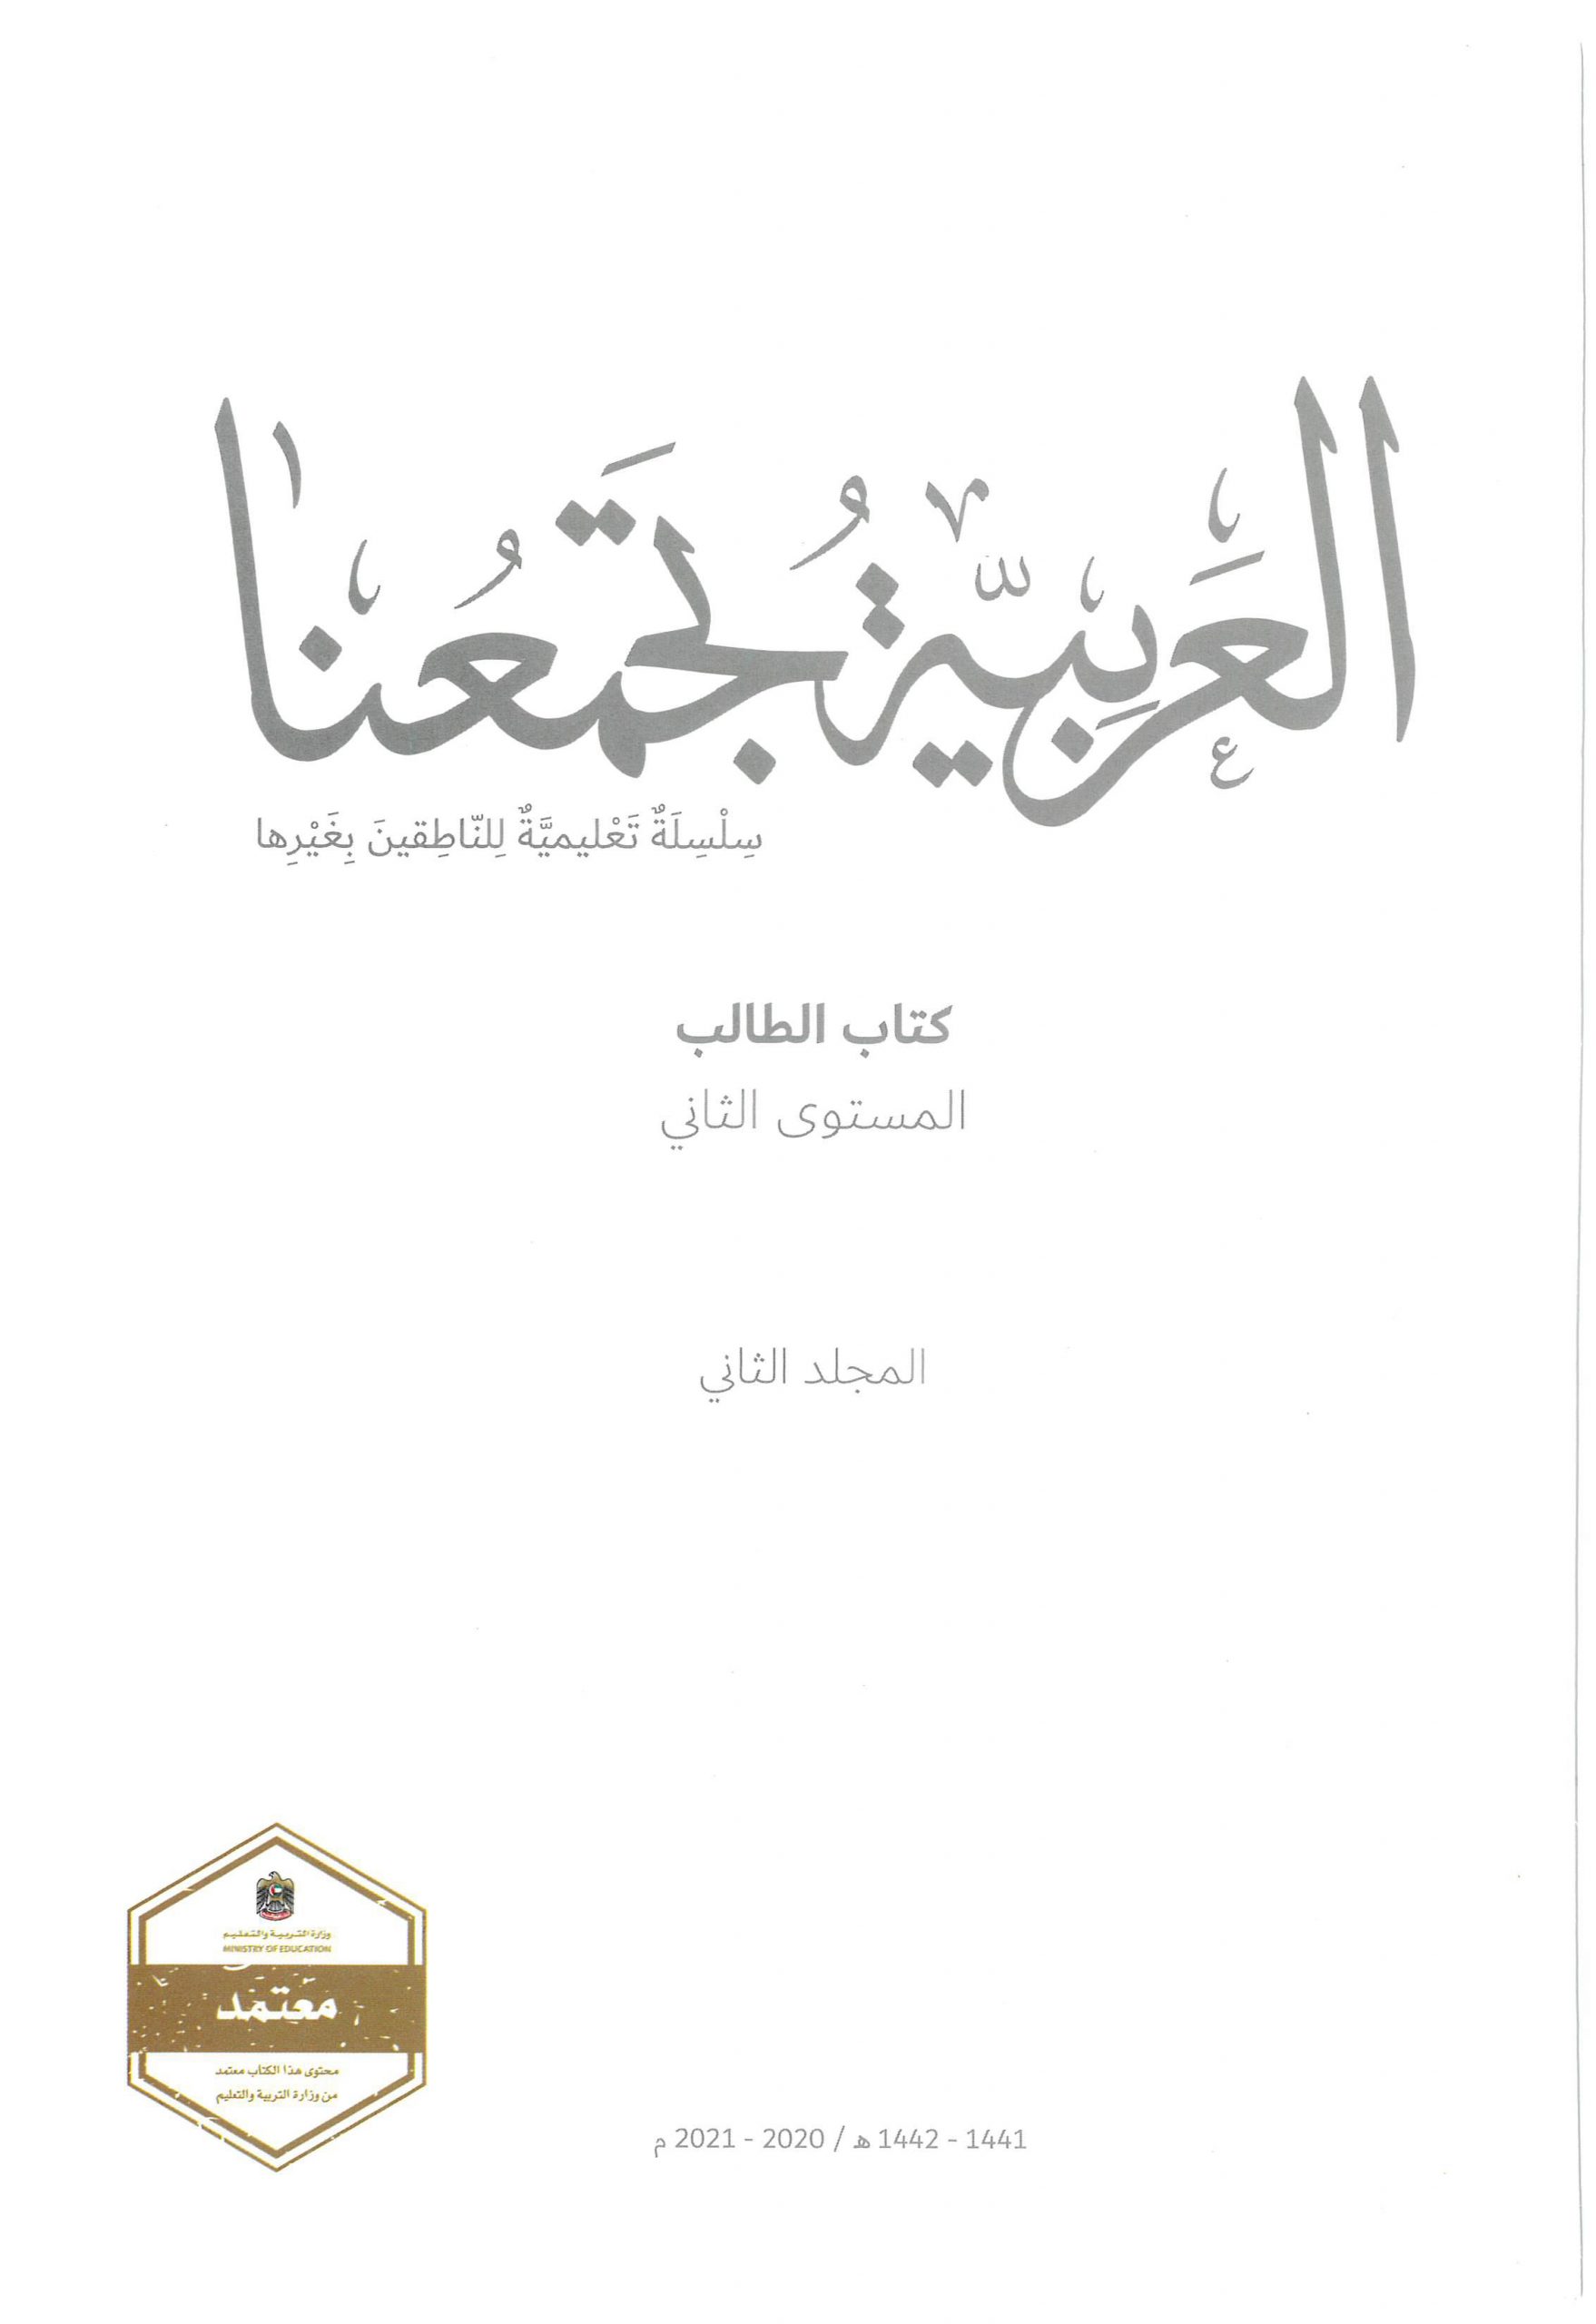 كتاب الطالب الفصل الدراسي الثاني 2020-2021 لغير الناطقين بيها الصف الثاني مادة اللغة العربية 